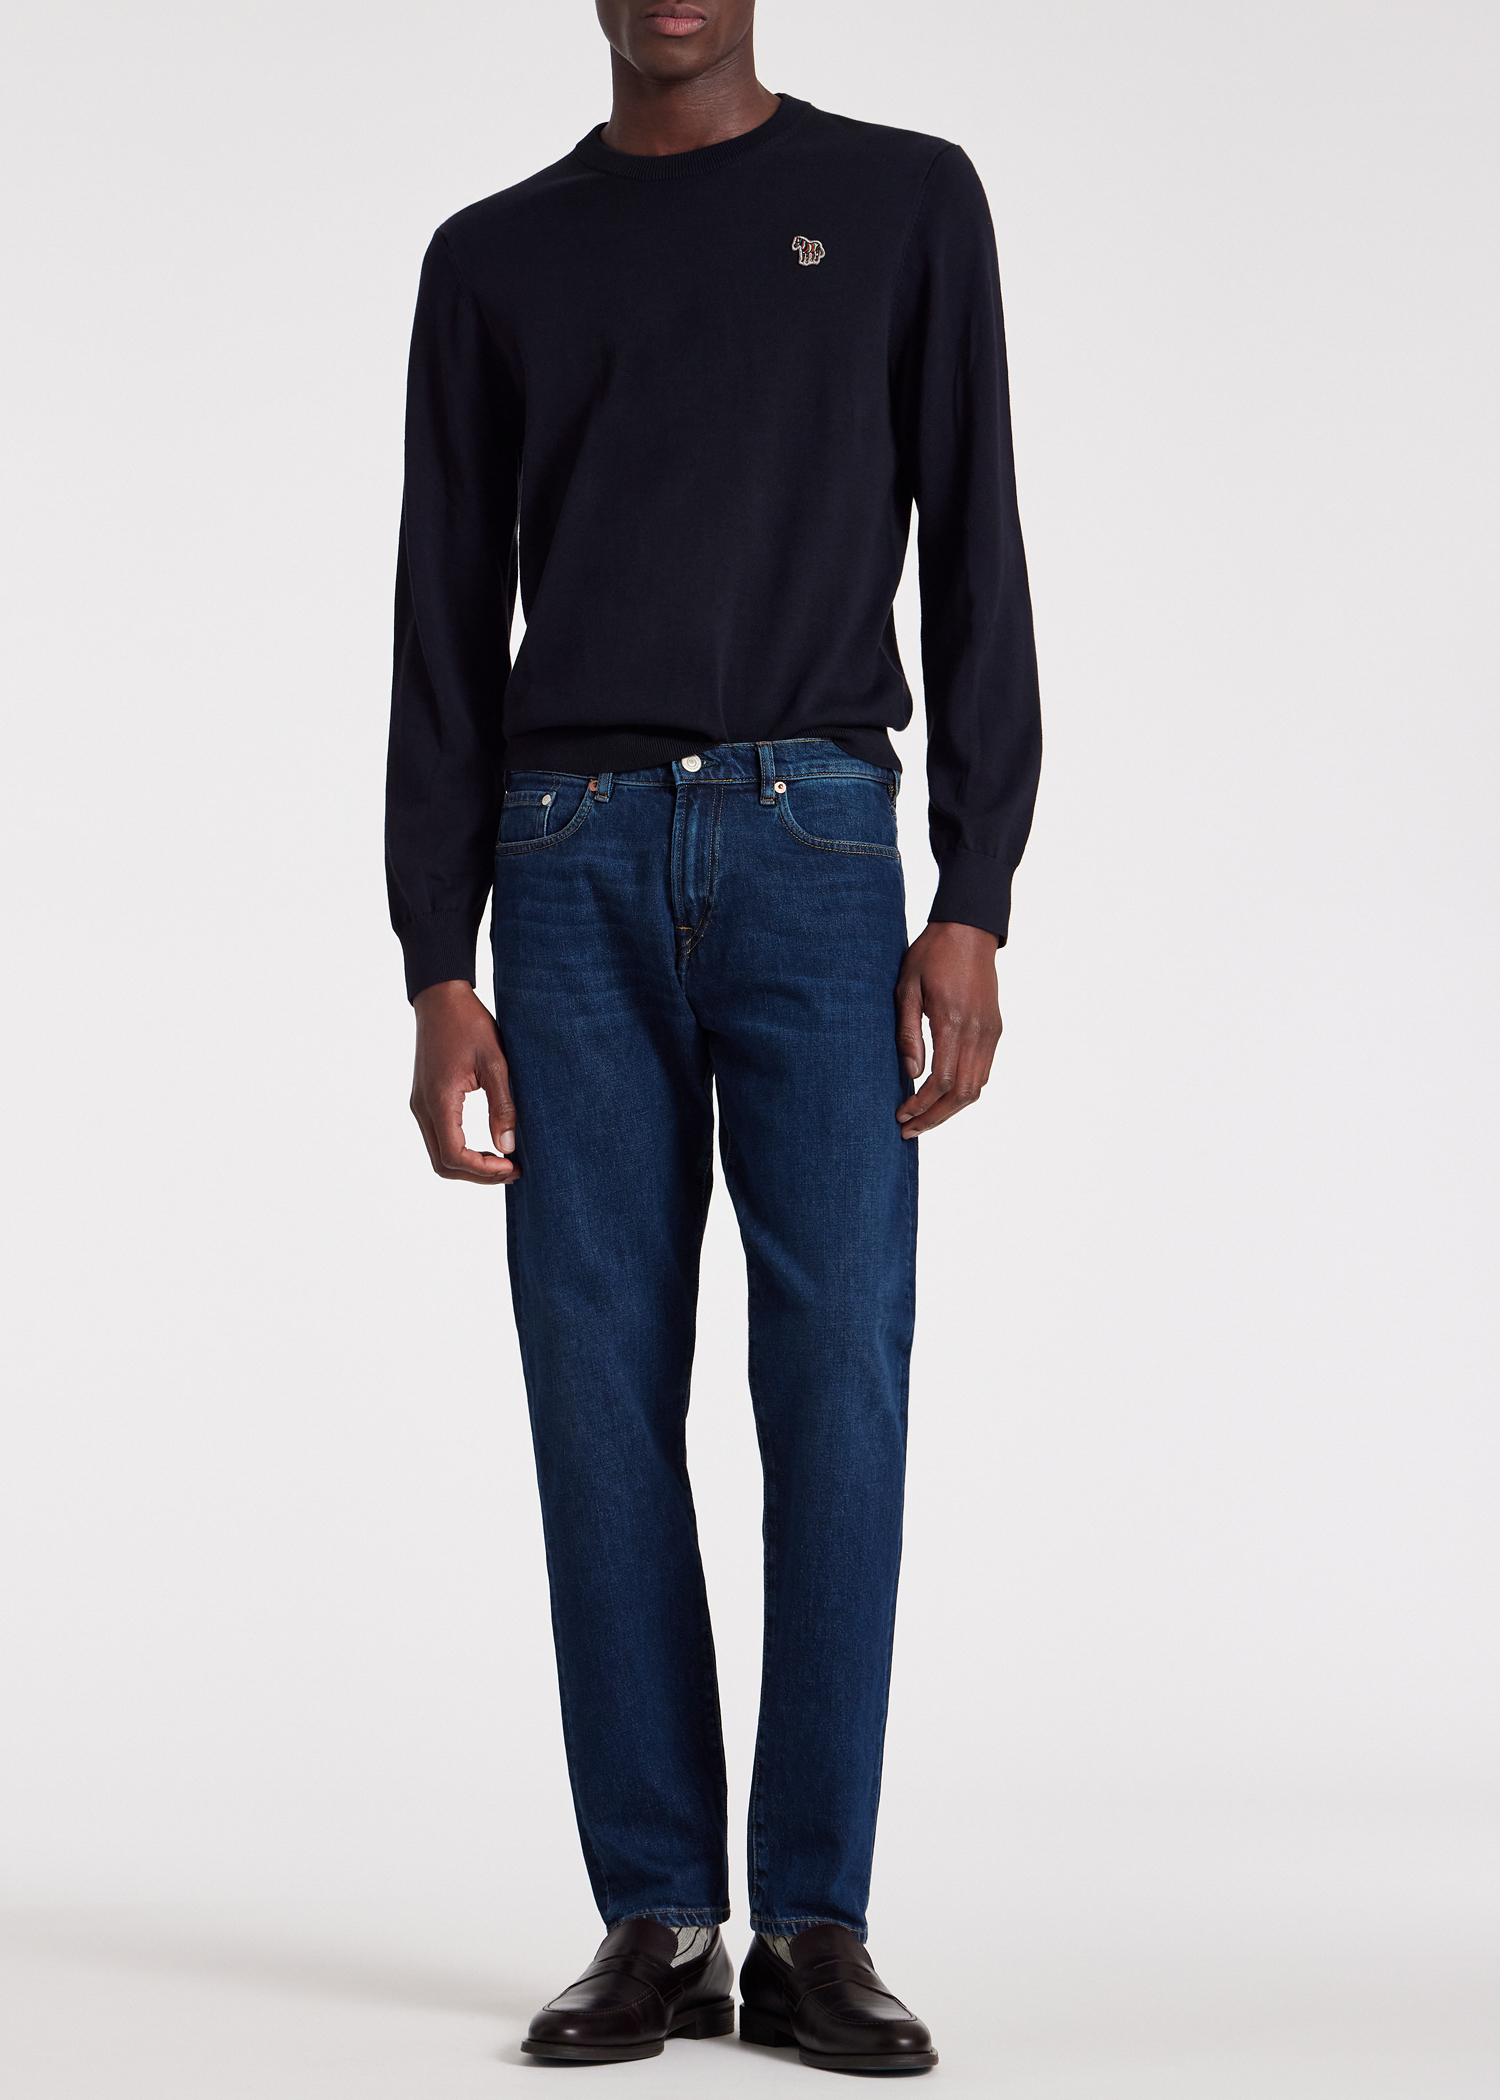 Designer Jeans for Men | Paul Smith